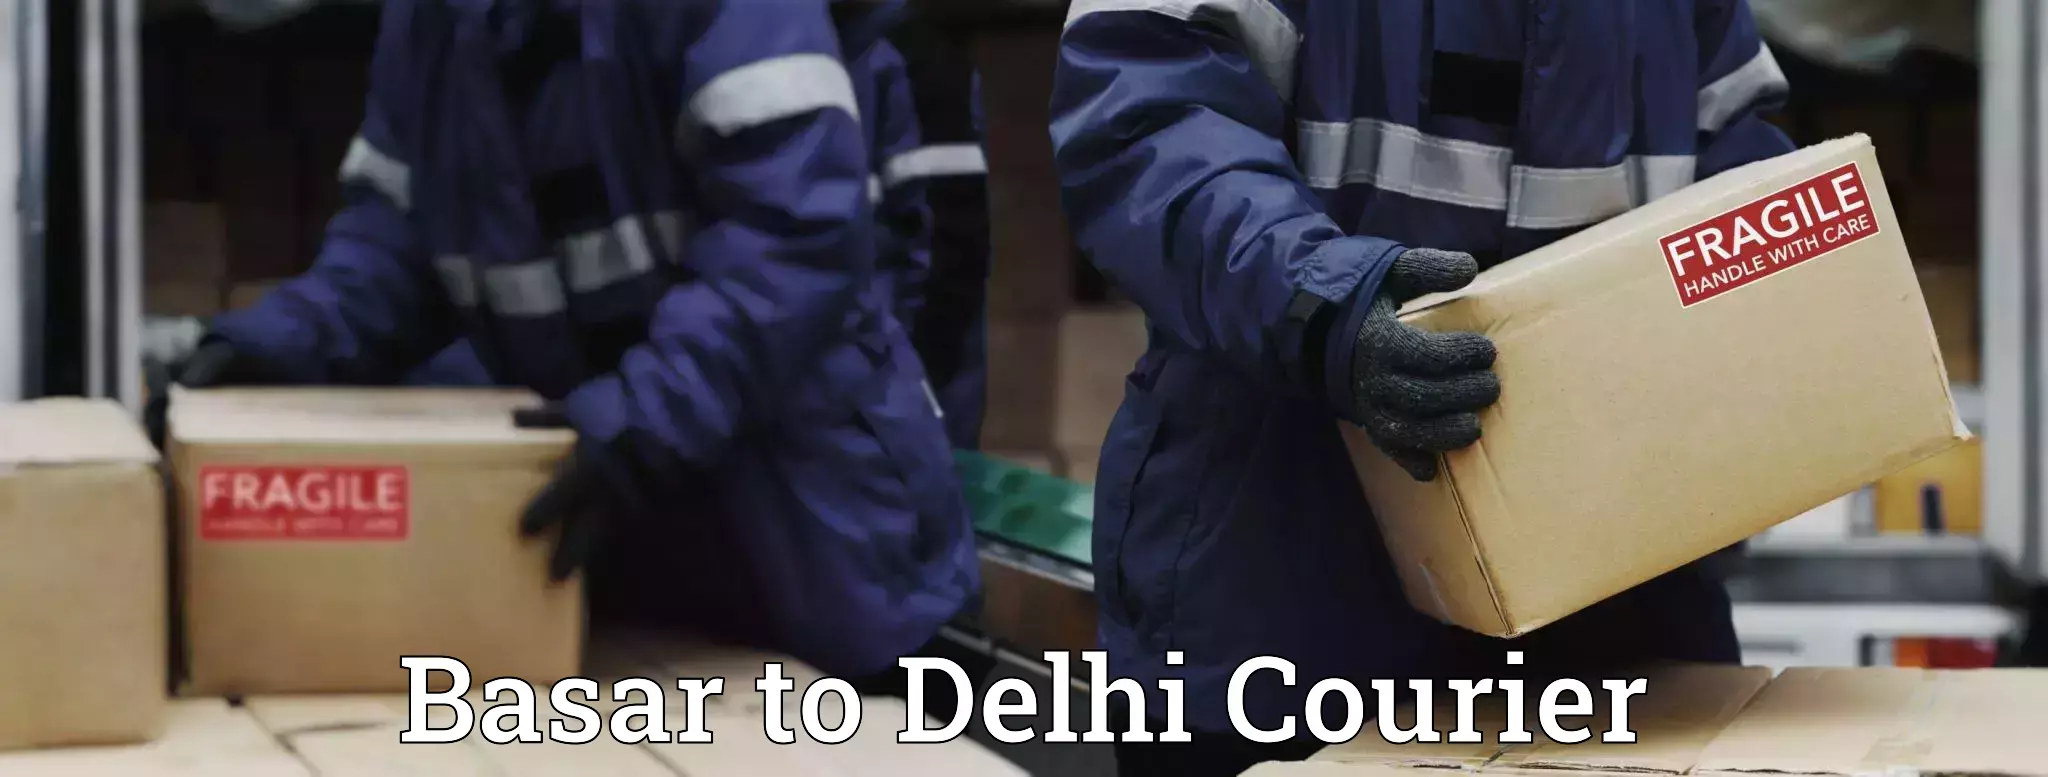 Courier service comparison Basar to Delhi